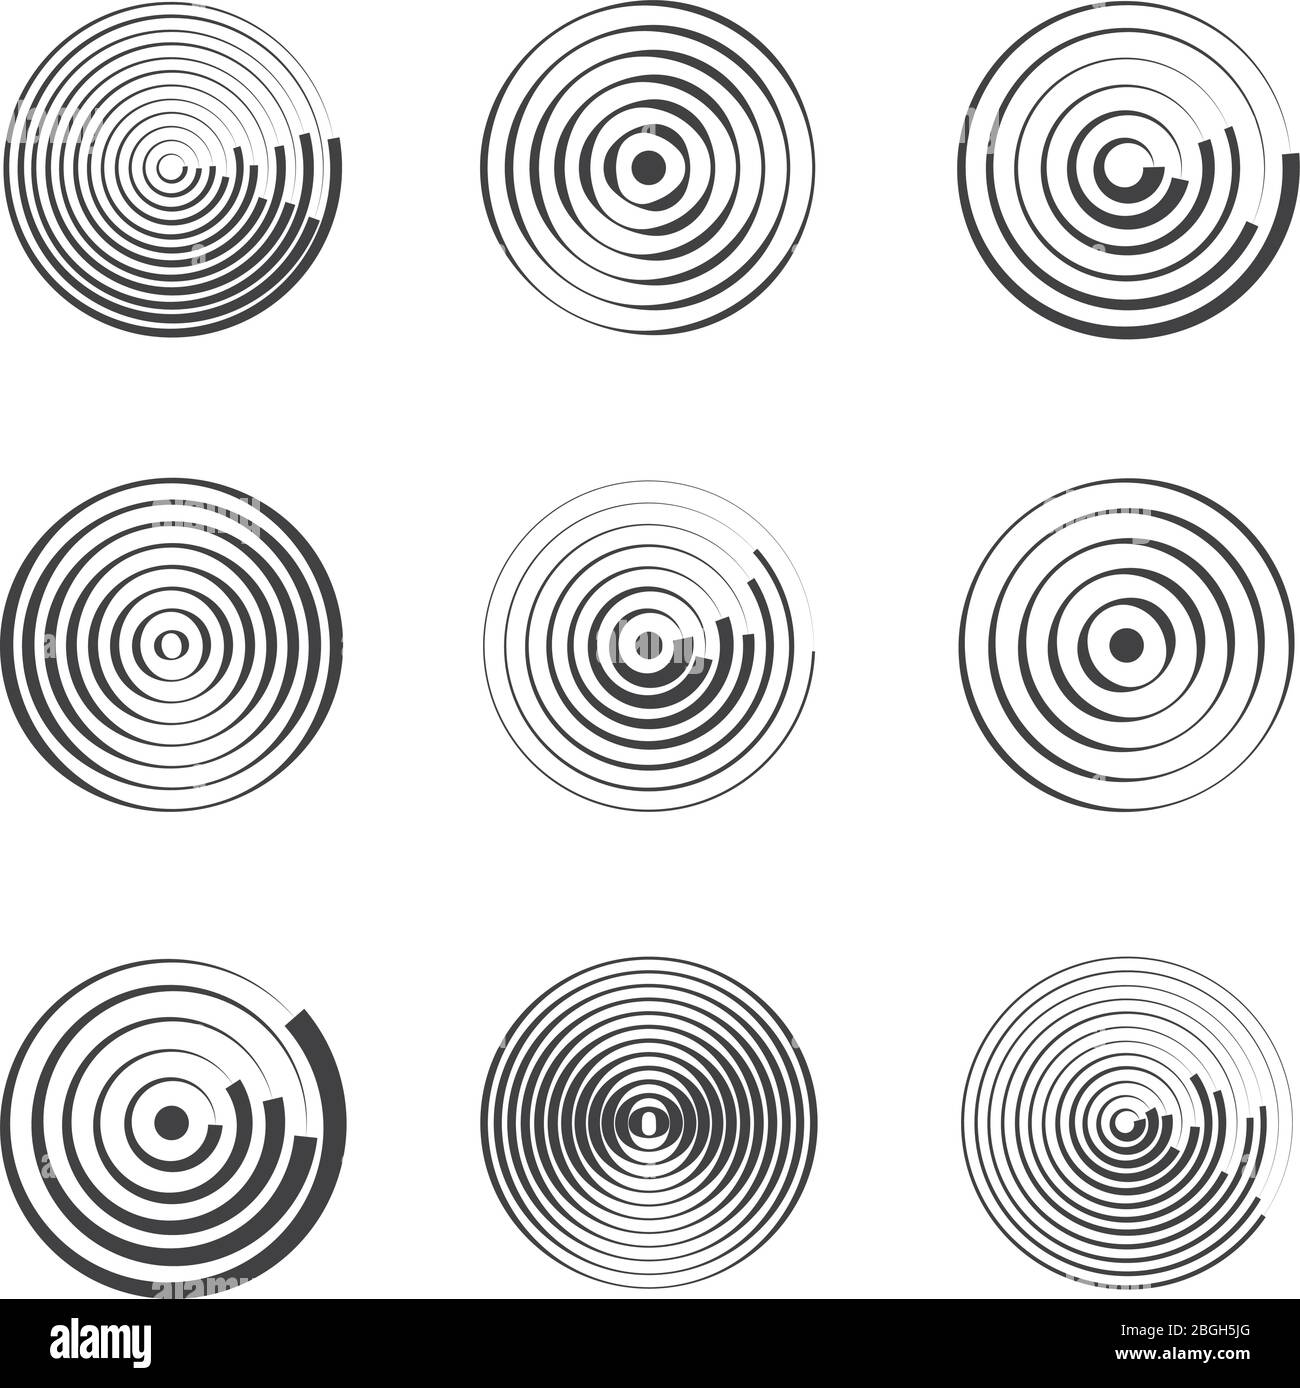 Cercles concentriques abstraits géométriques vectoriels. Formes circulaires et ondes rondes. Anneaux avec lignes radiales. Répétition radiale circulaire, illustration épicentre circulaire Illustration de Vecteur